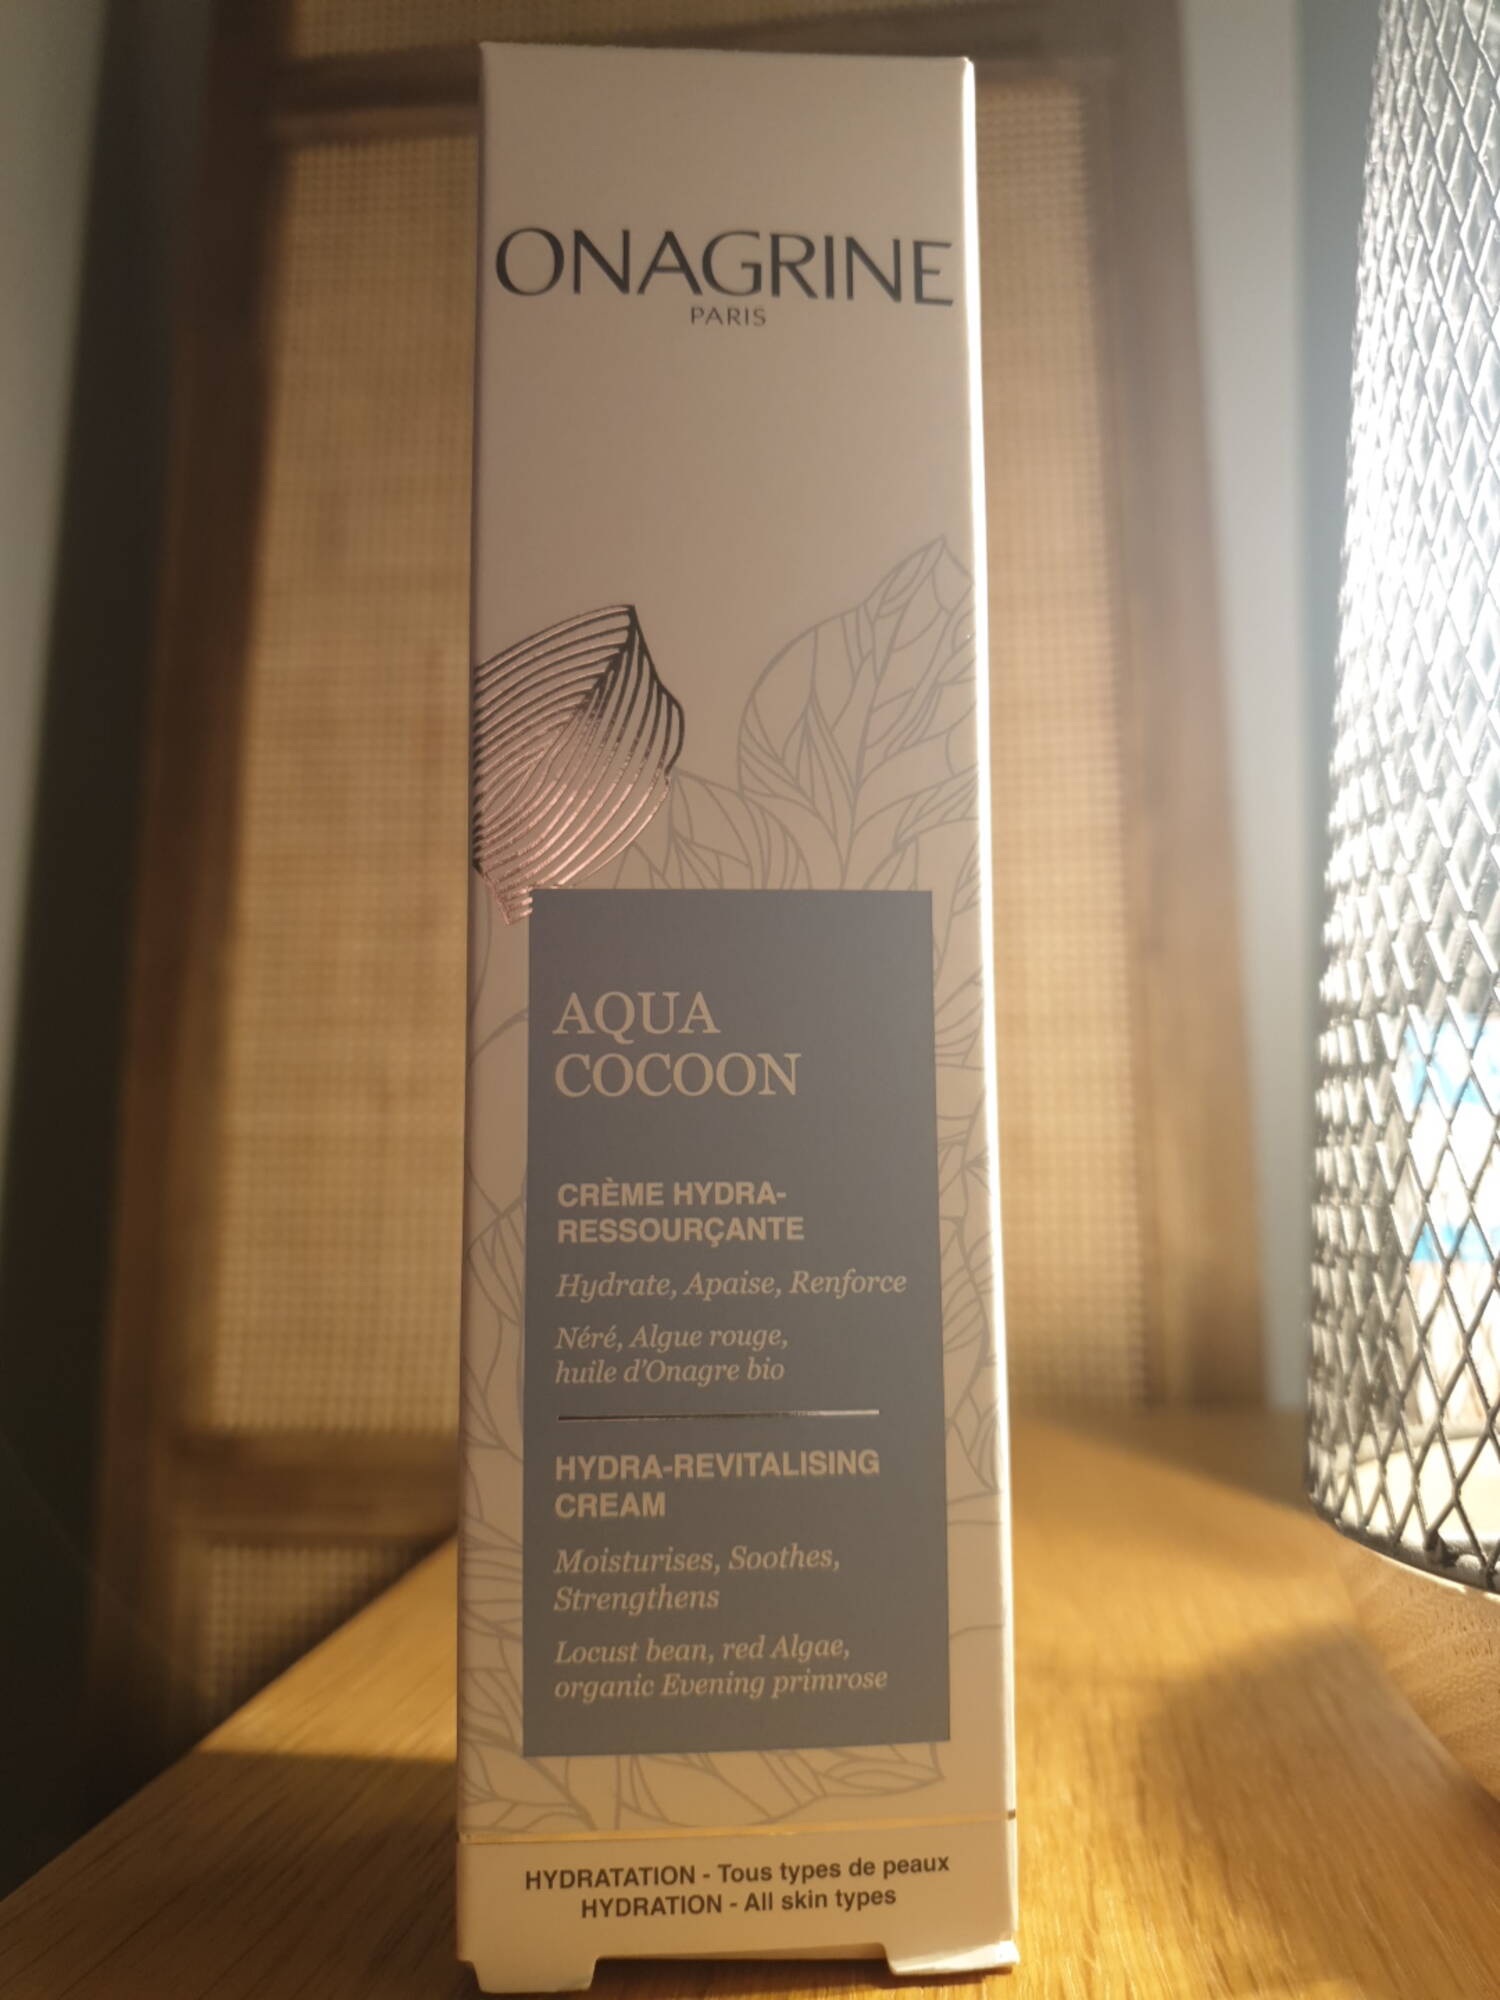 ONAGRINE - Aqua cocoon - Crème hydra-ressourçante